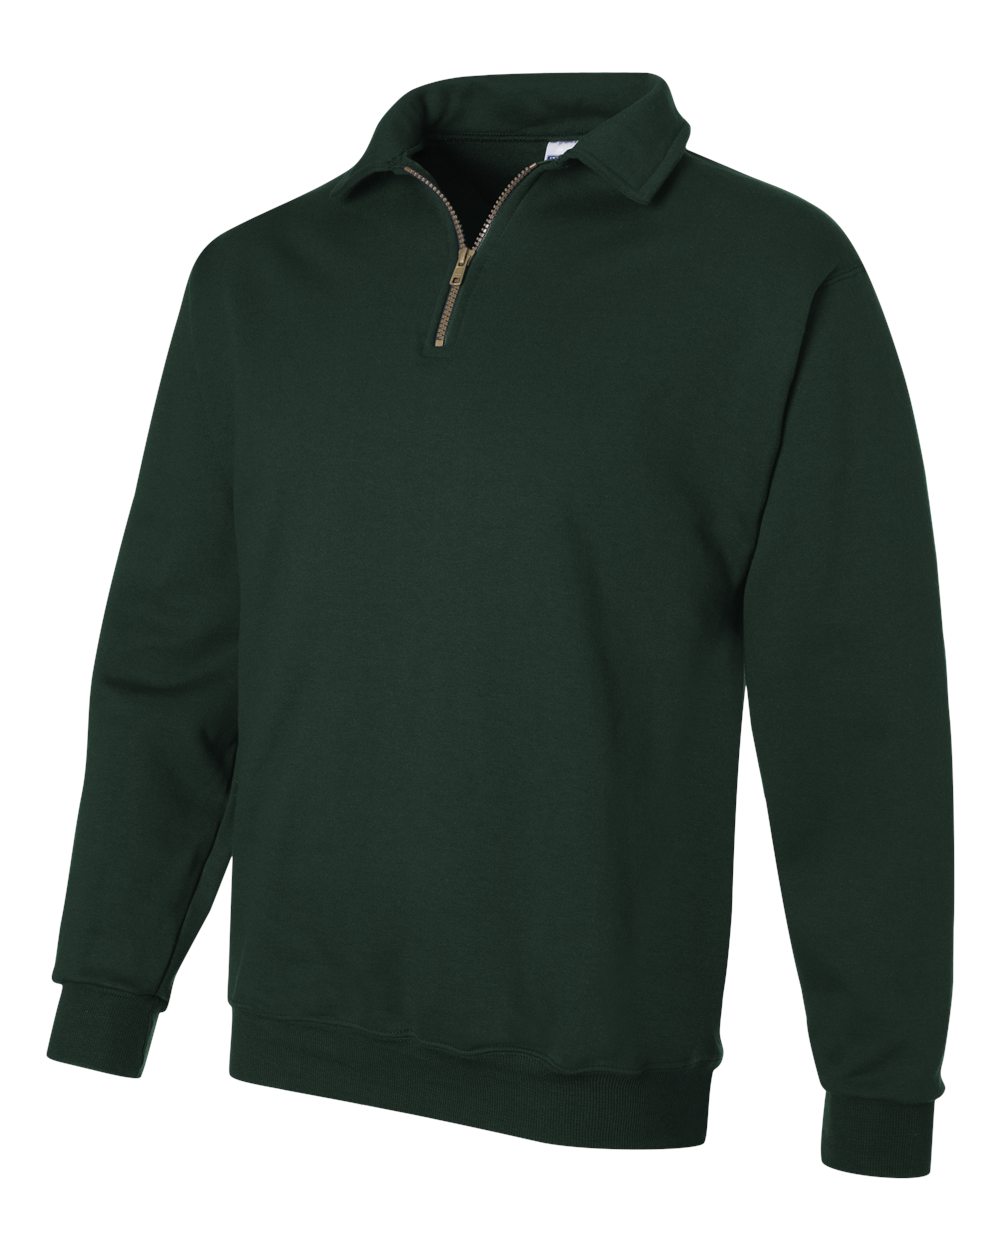 JERZEES 4528MR - NuBlend SUPER SWEATS Quarter-Zip Pullover Sweatshirt